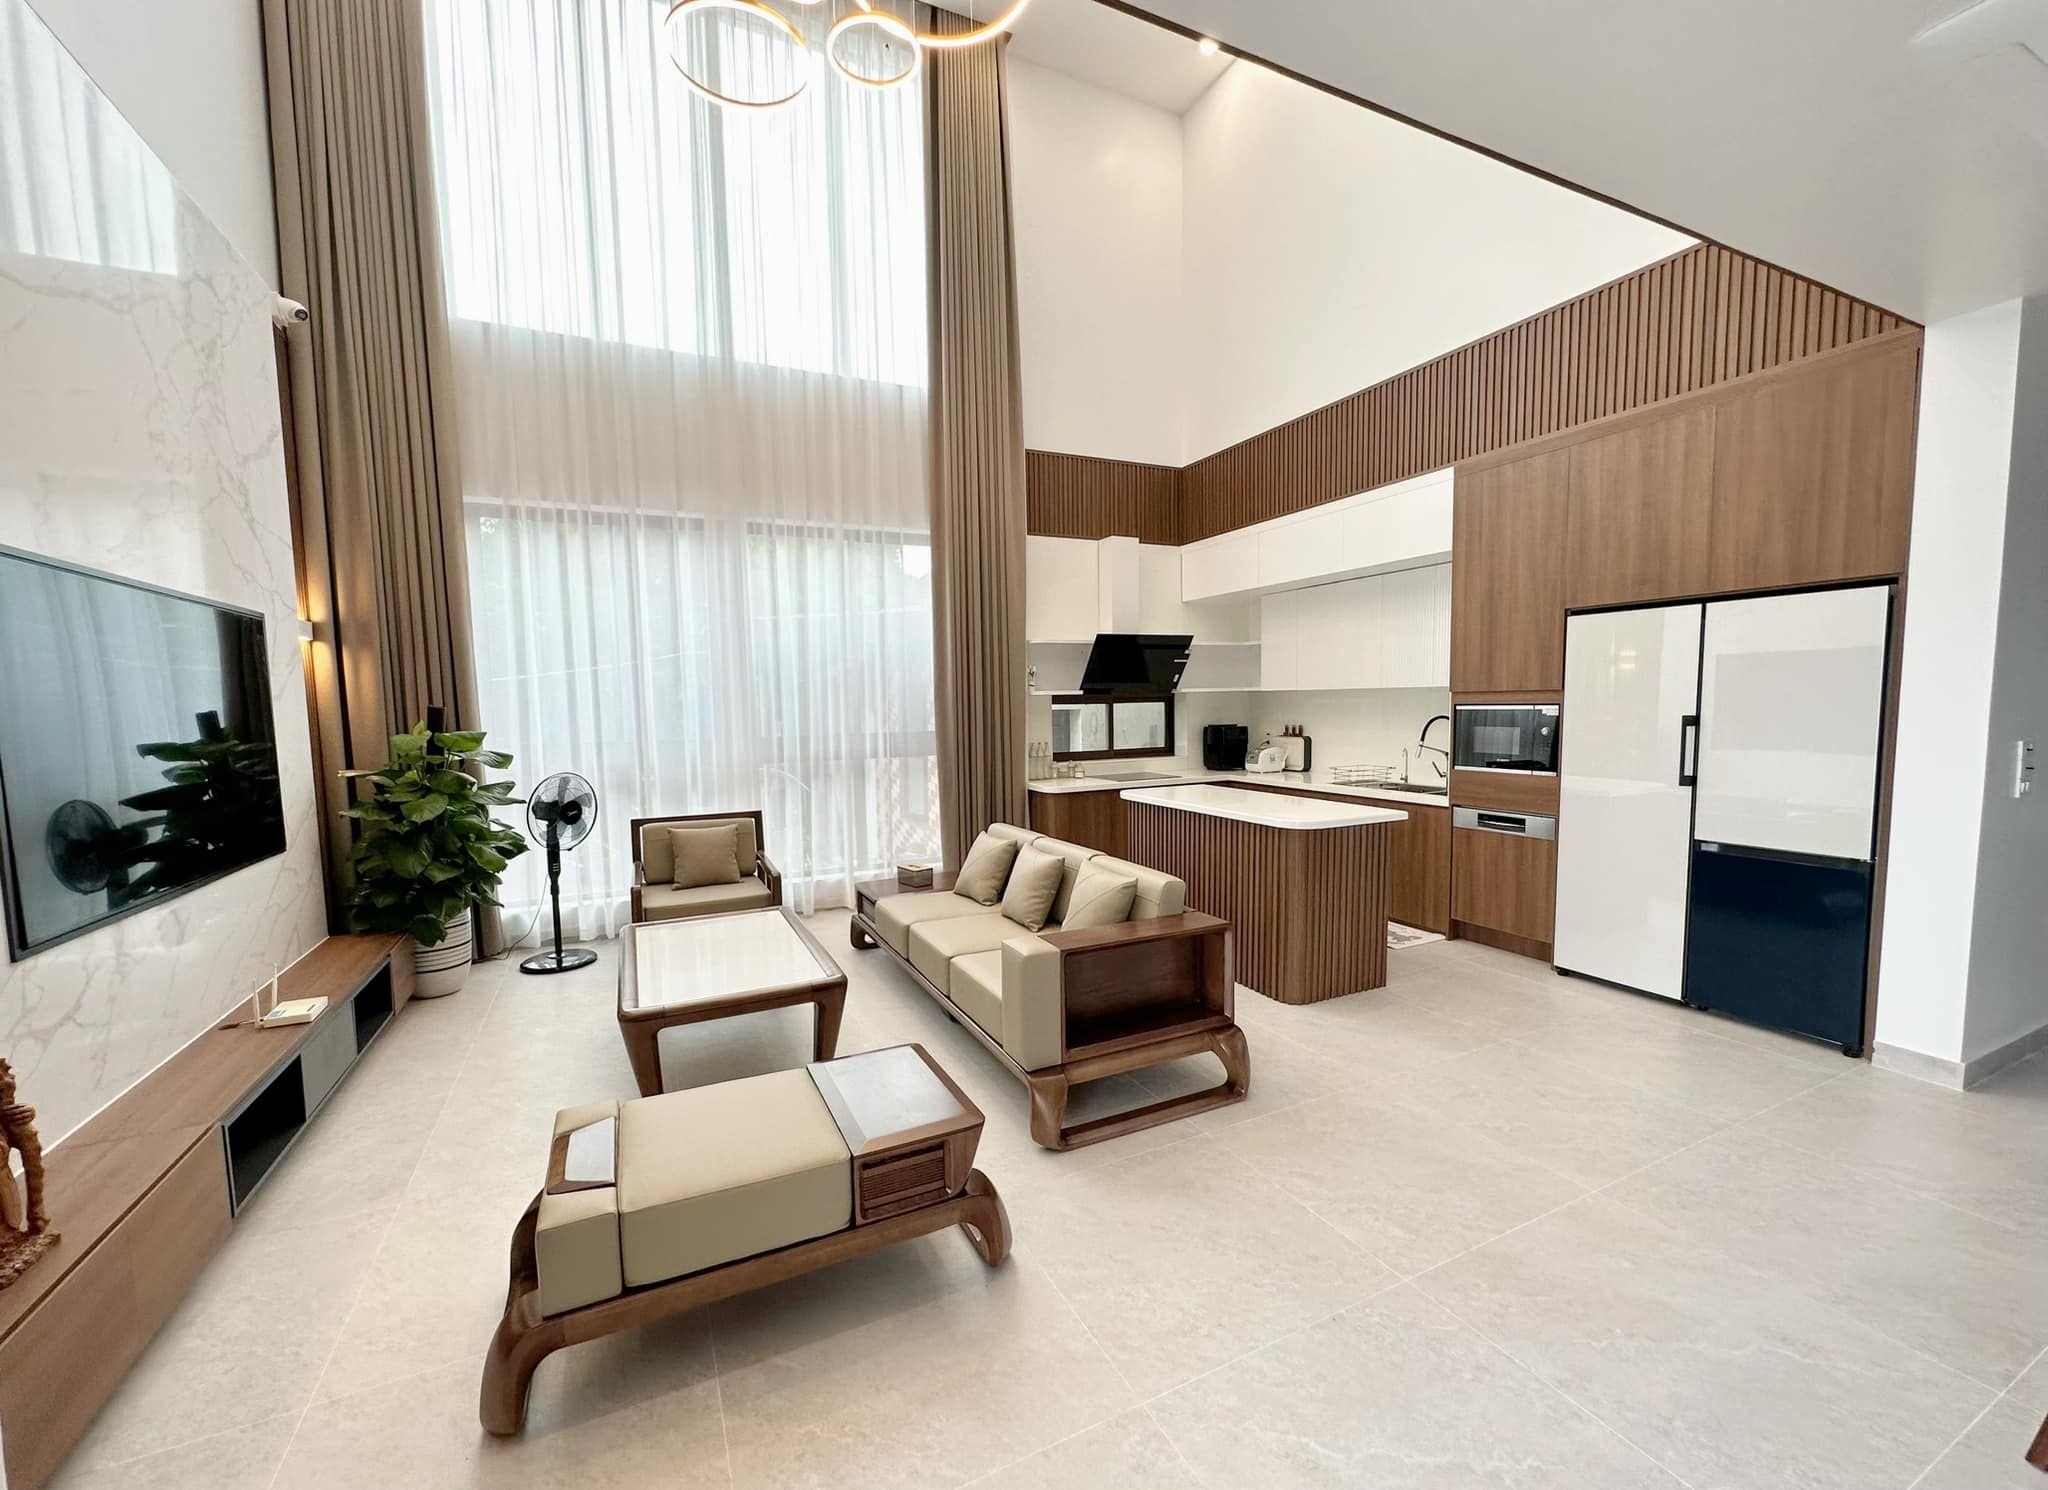 Phòng khách biệt thự hiện đại, sang trọng với bộ sofa màu ghi kết hợp gỗ tự nhiên